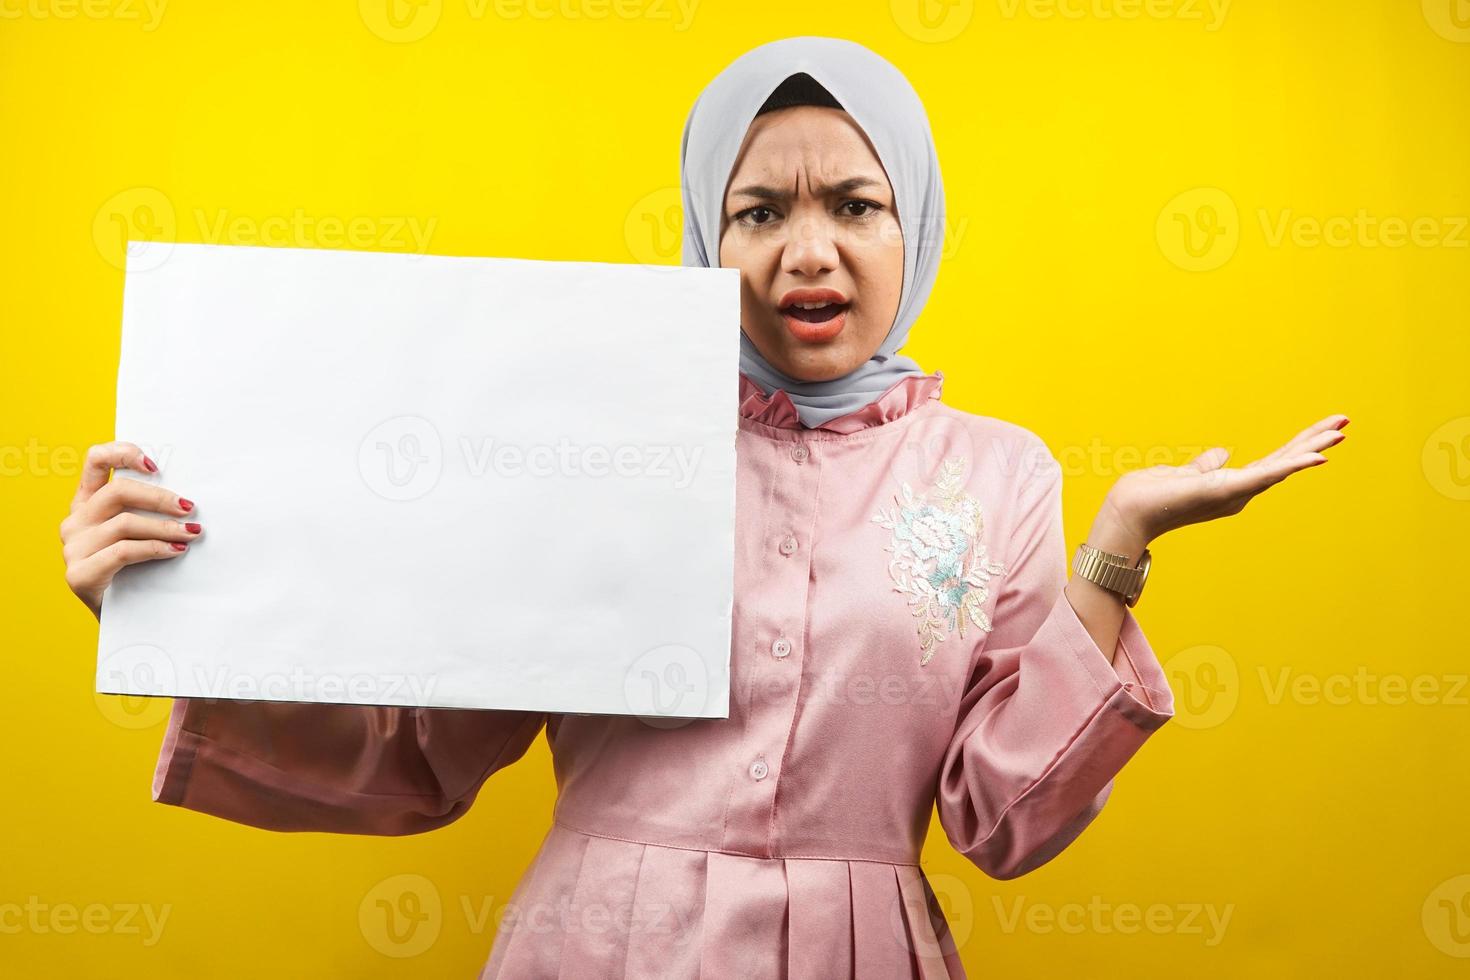 ganska ung muslimsk kvinna chockad, hand som håller en tom banderoll, plakat, vit tavla, tom skylttavla, vit reklamtavla, presenterar något i kopieringsutrymmet, marknadsföring foto